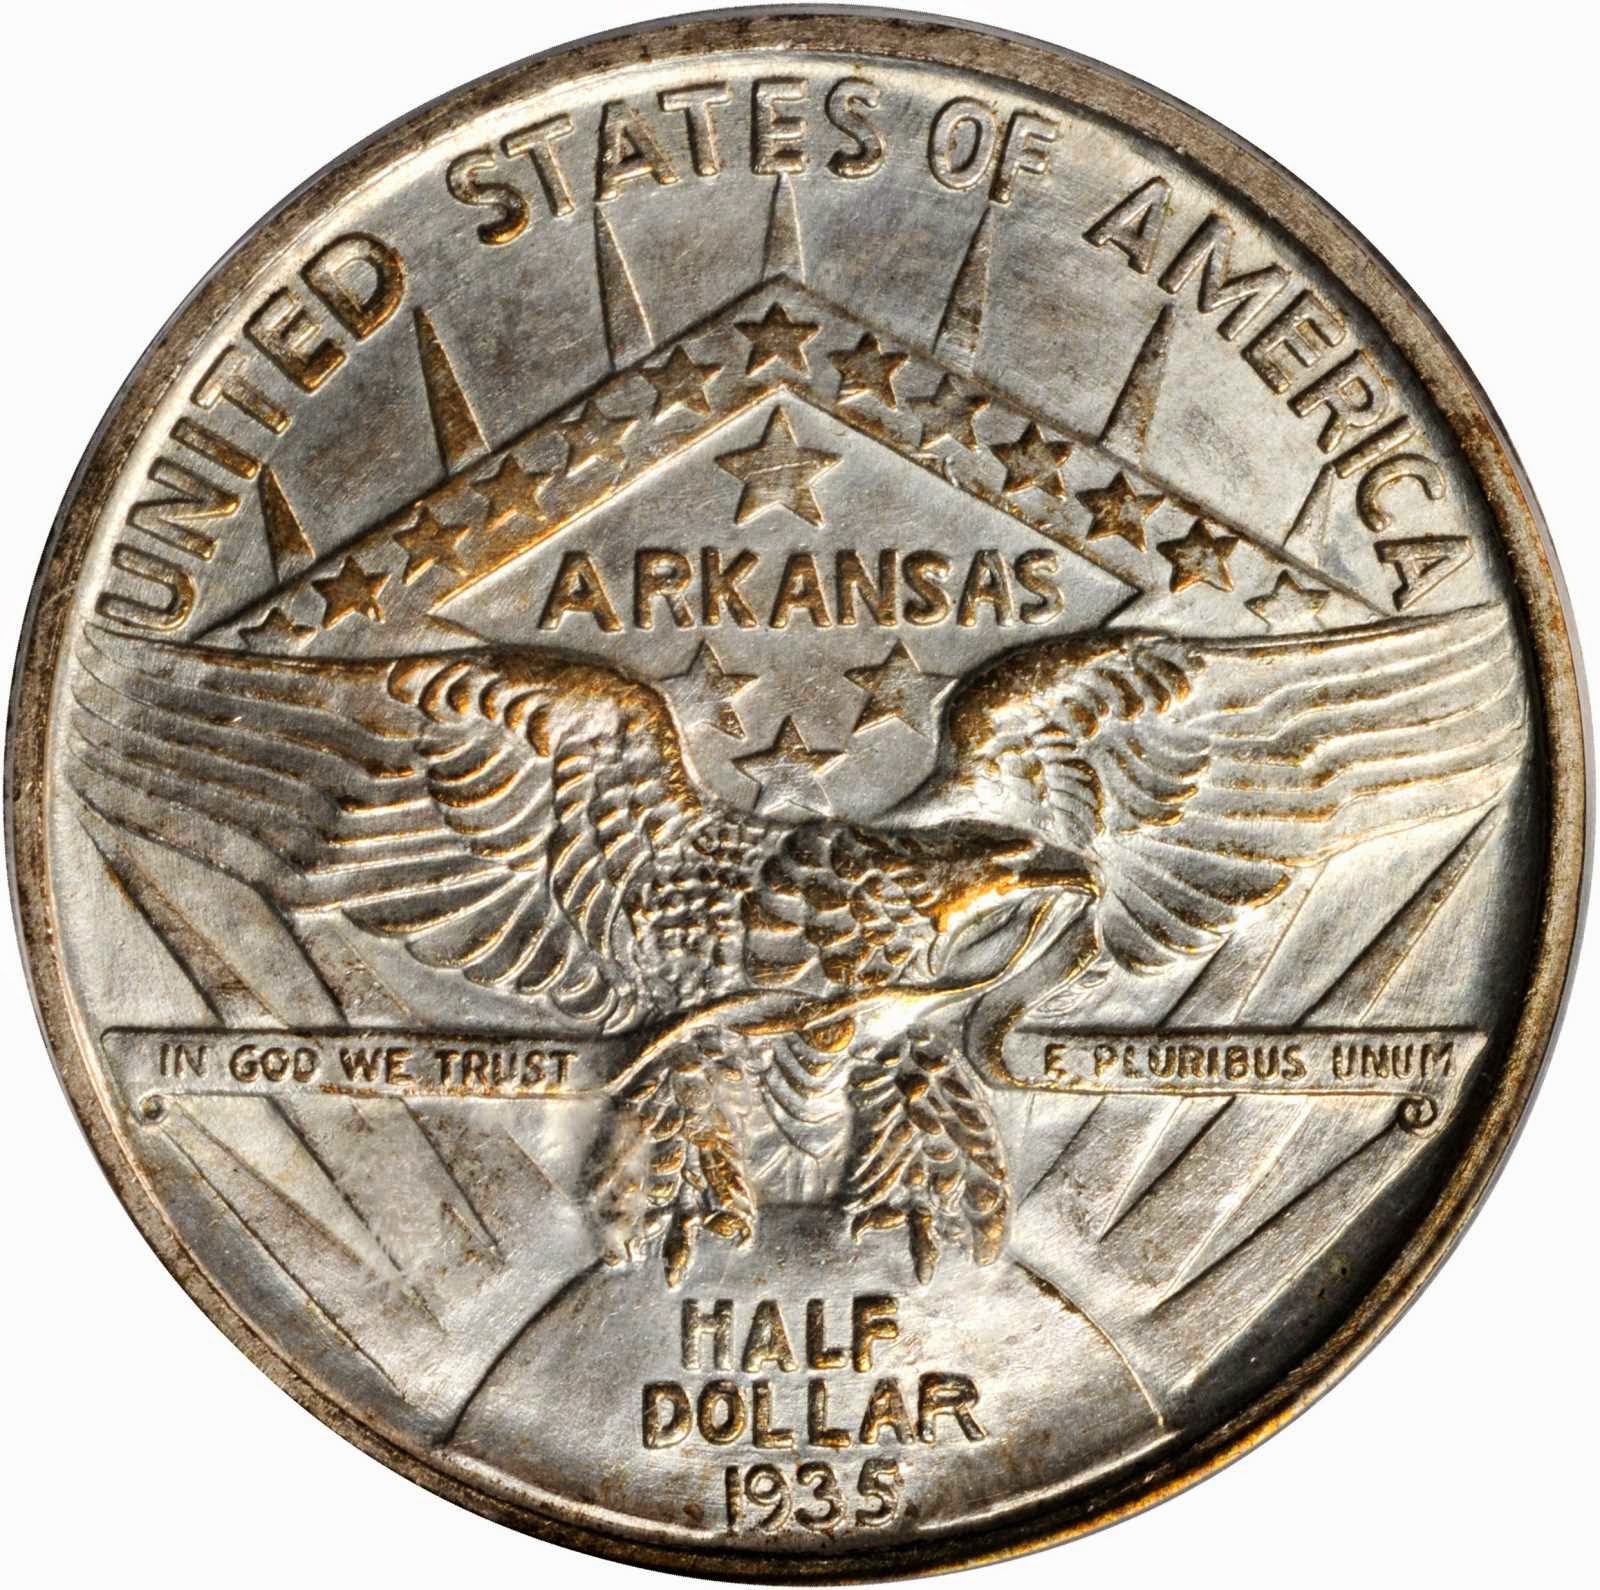 Arkansas Centennial Half Dollar